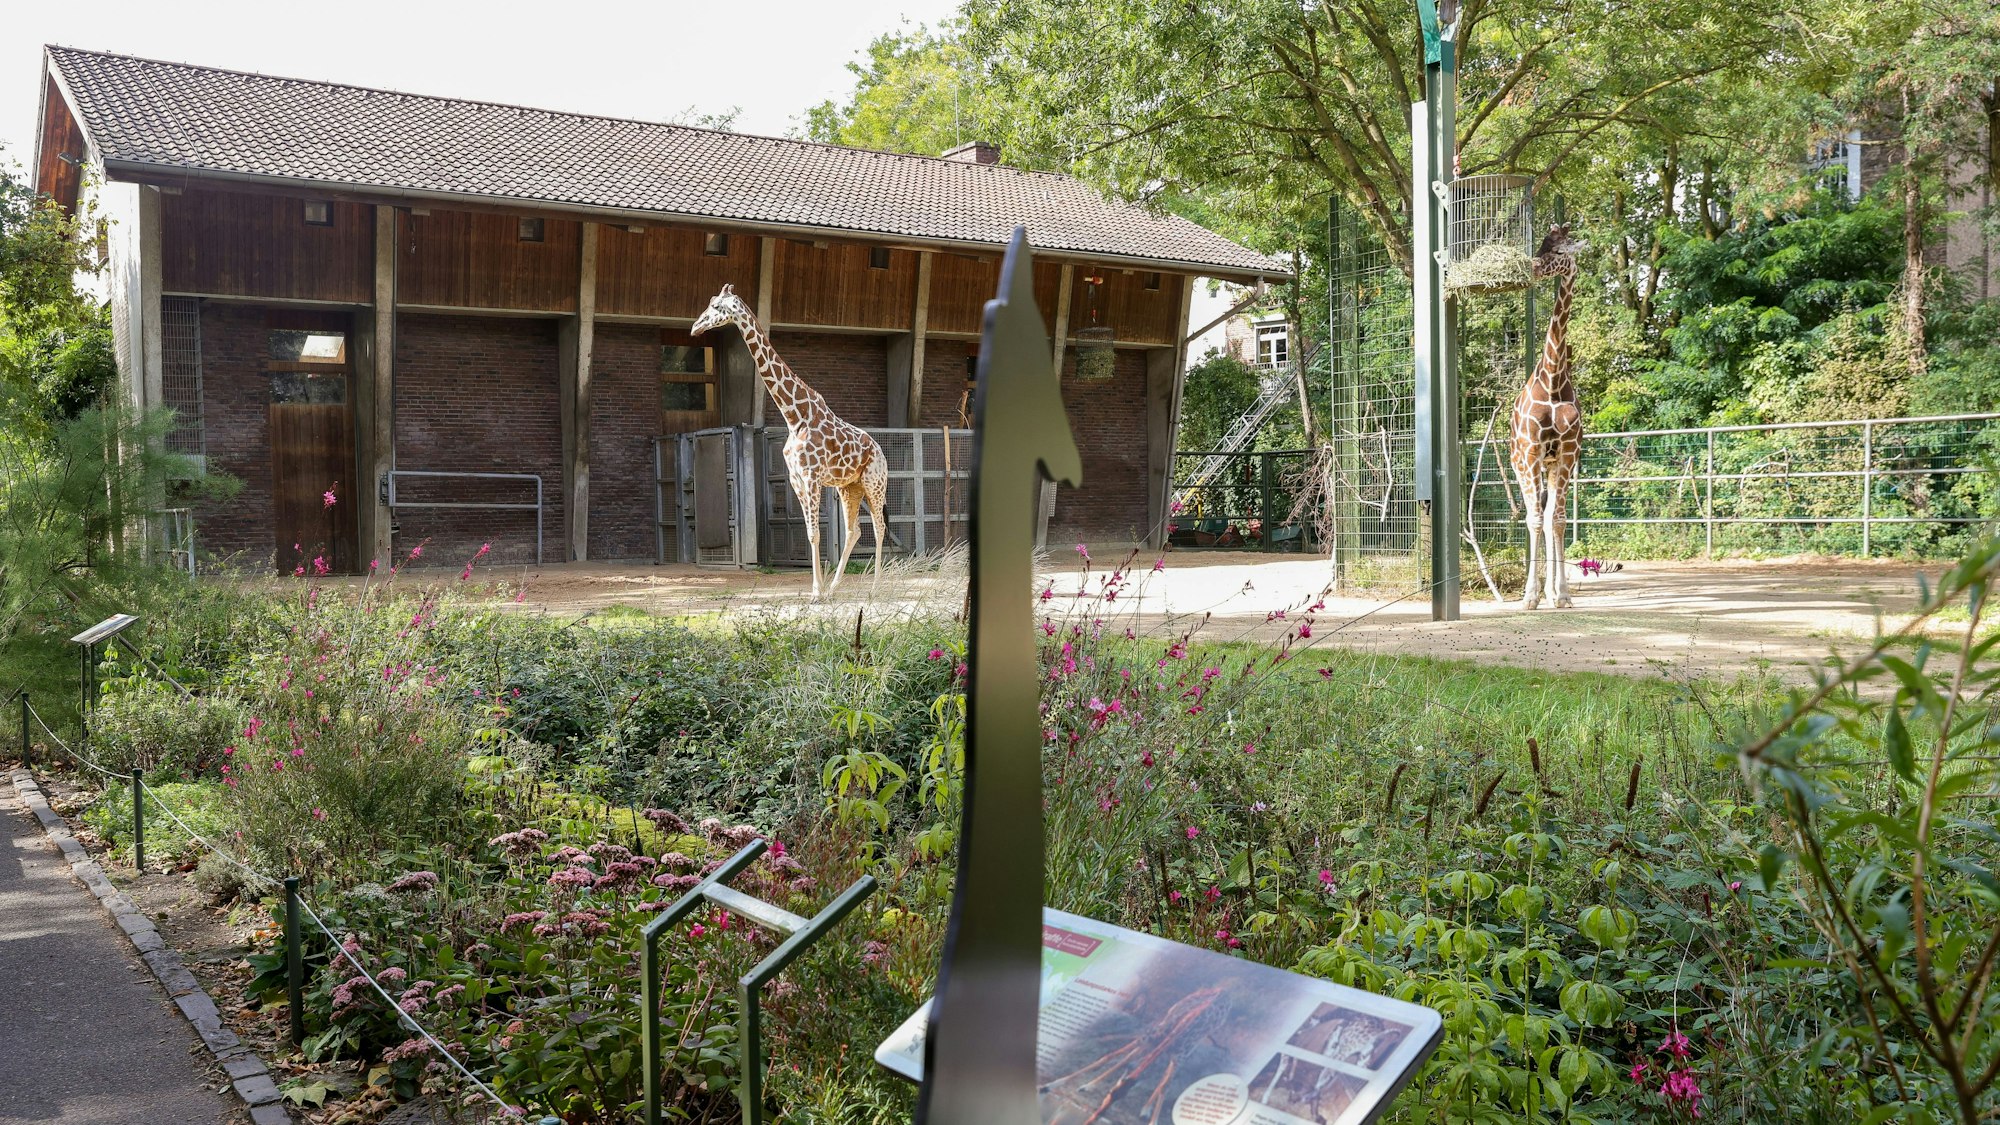 Im Giraffen-Gehege des Kölner Zoos stehen zwei Giraffen.